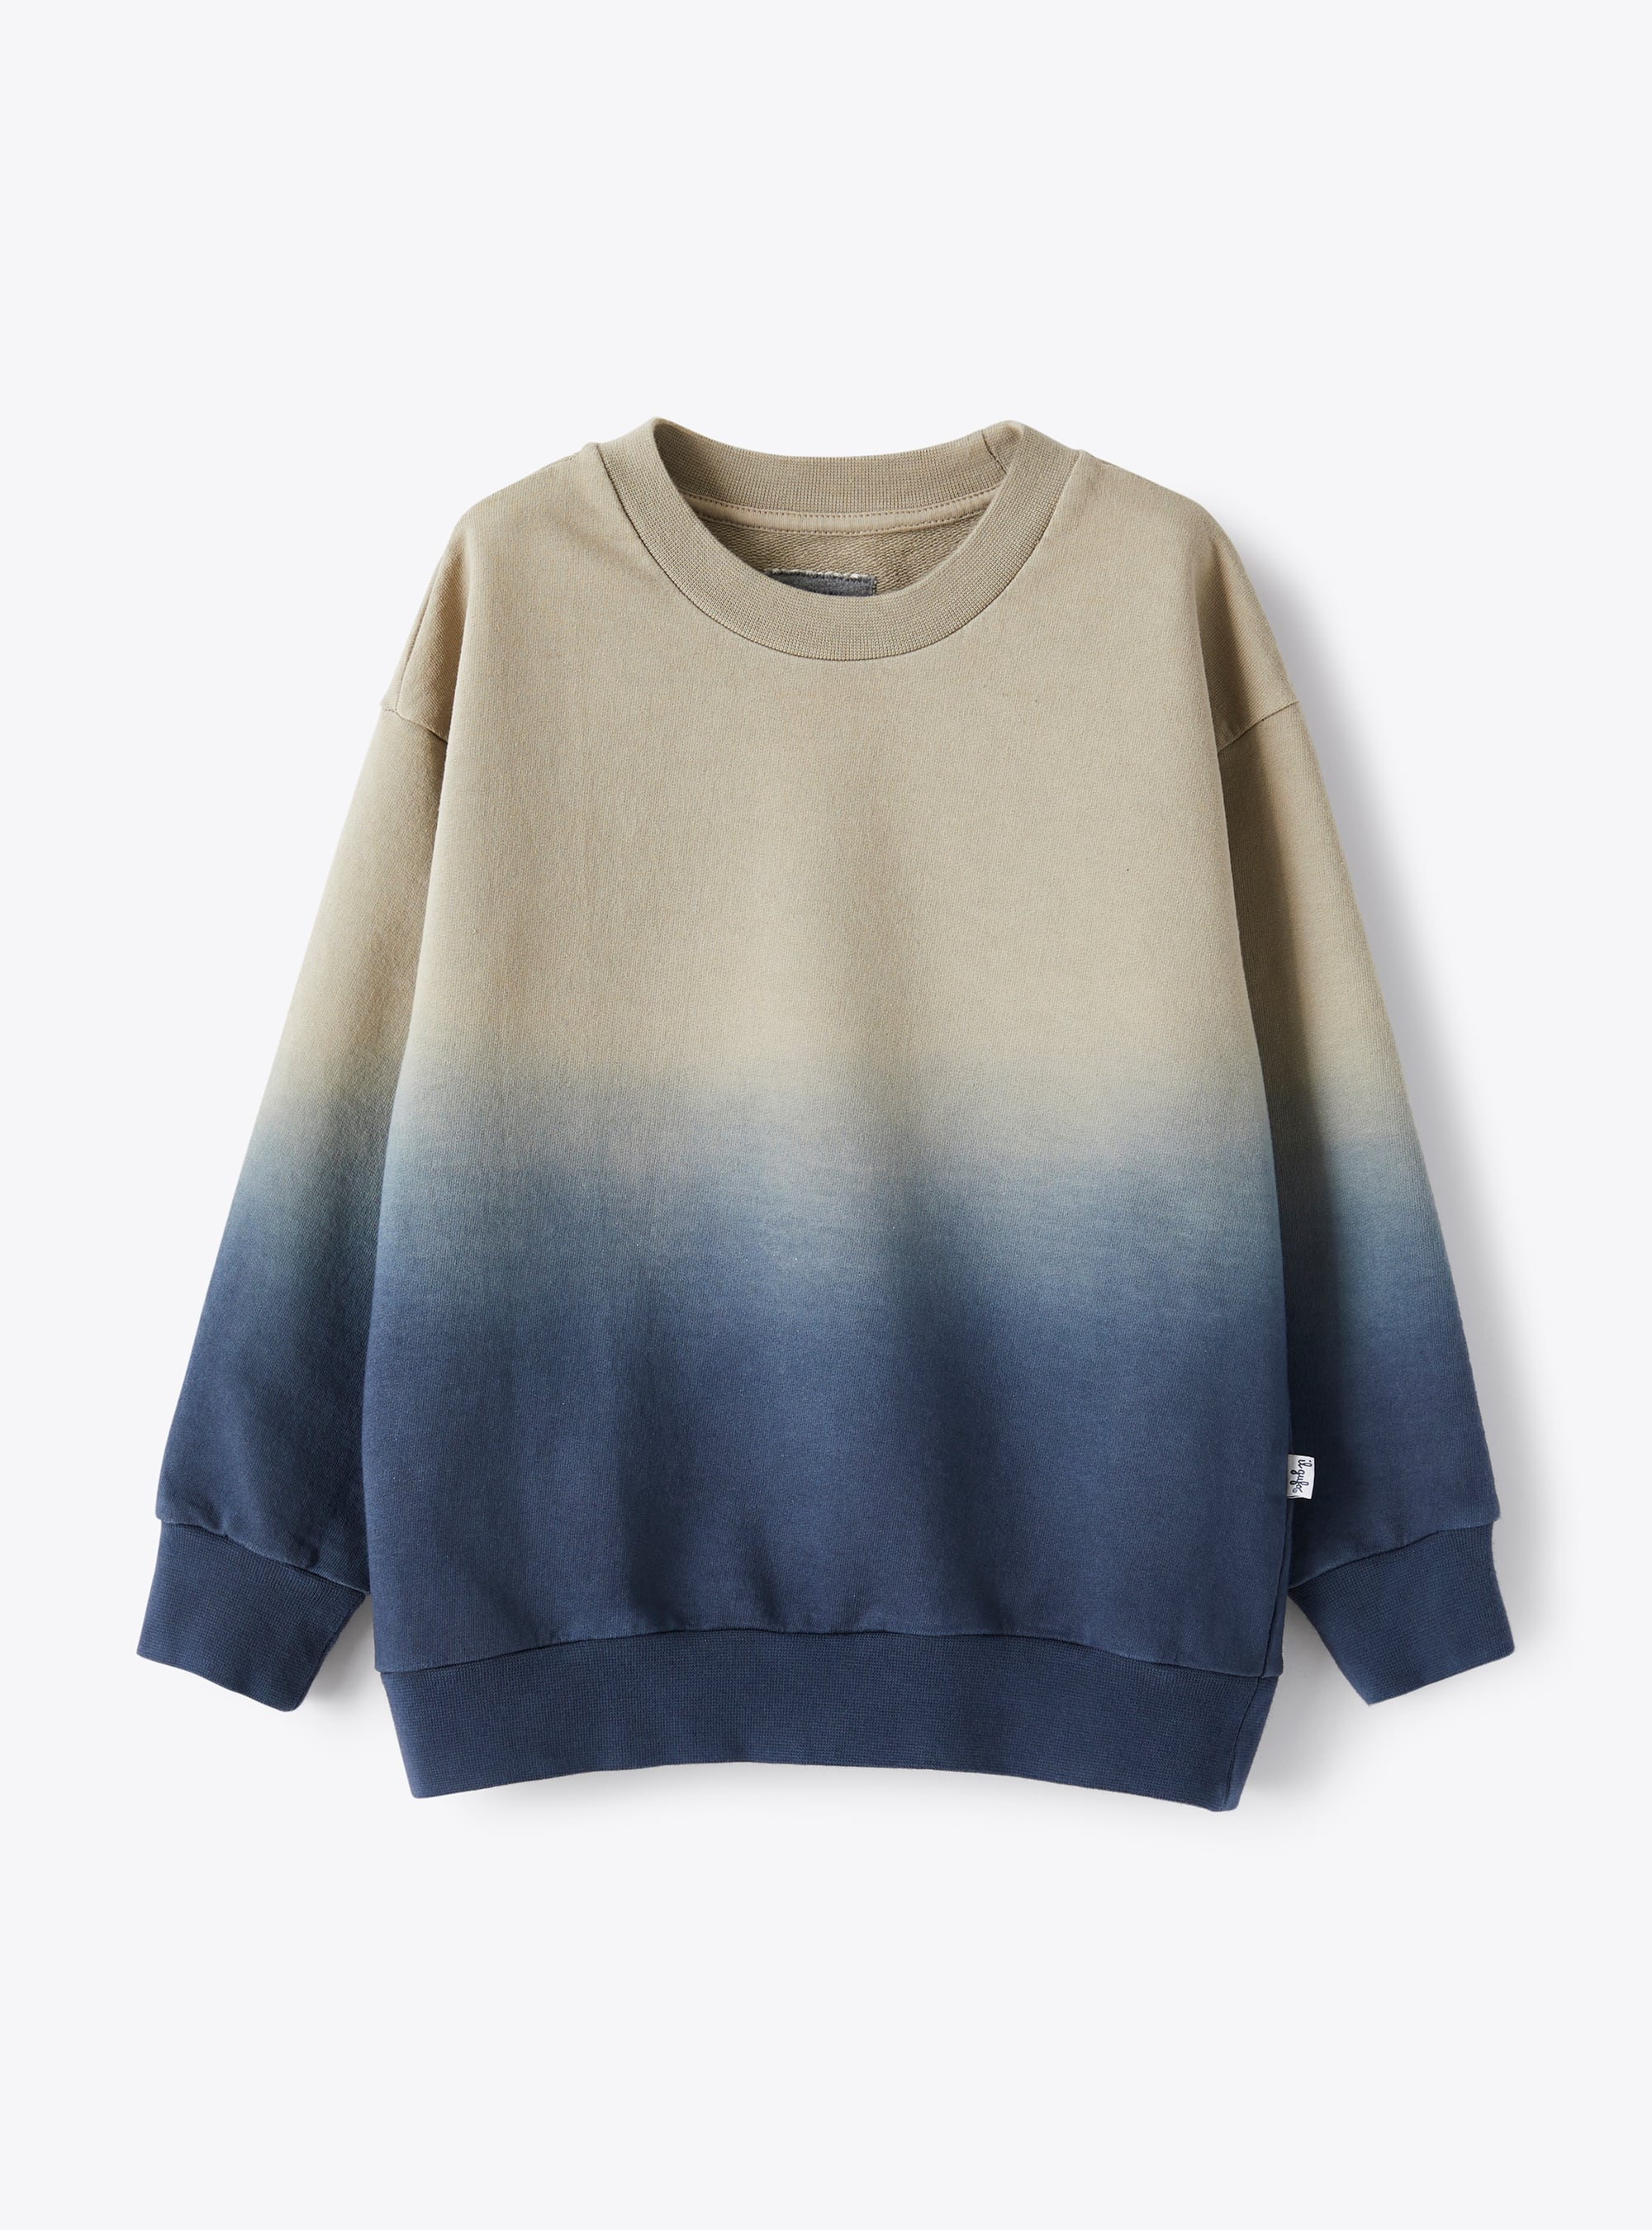 Sweatshirt mit nuancierter Optik in Beige und Blau - Sweatshirts - Il Gufo